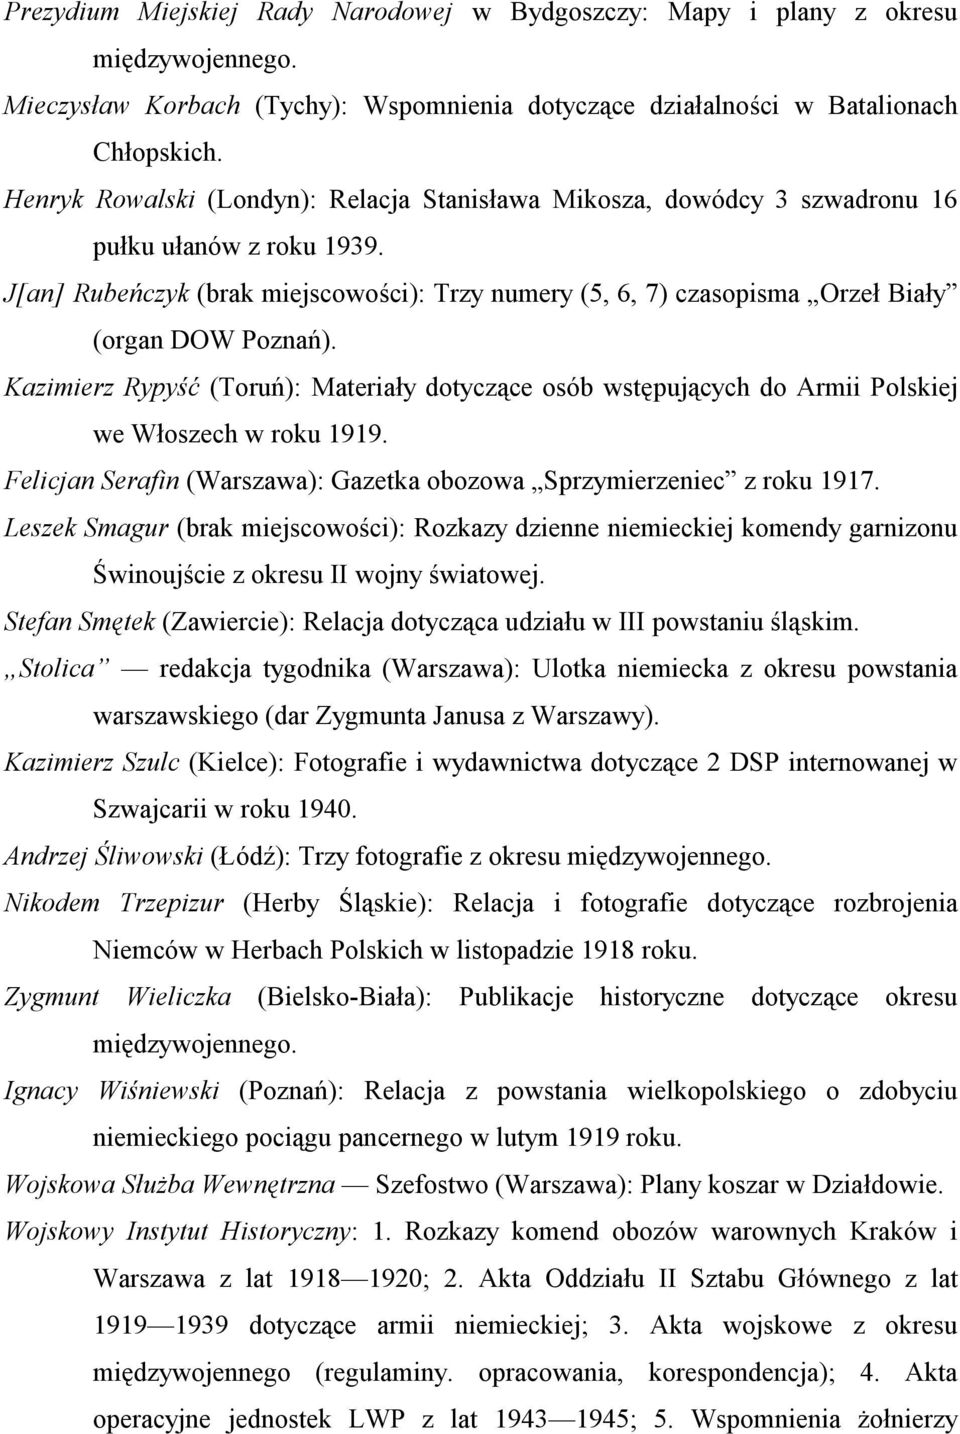 J[an] Rubeńczyk (brak miejscowości): Trzy numery (5, 6, 7) czasopisma Orzeł Biały (organ DOW Poznań).